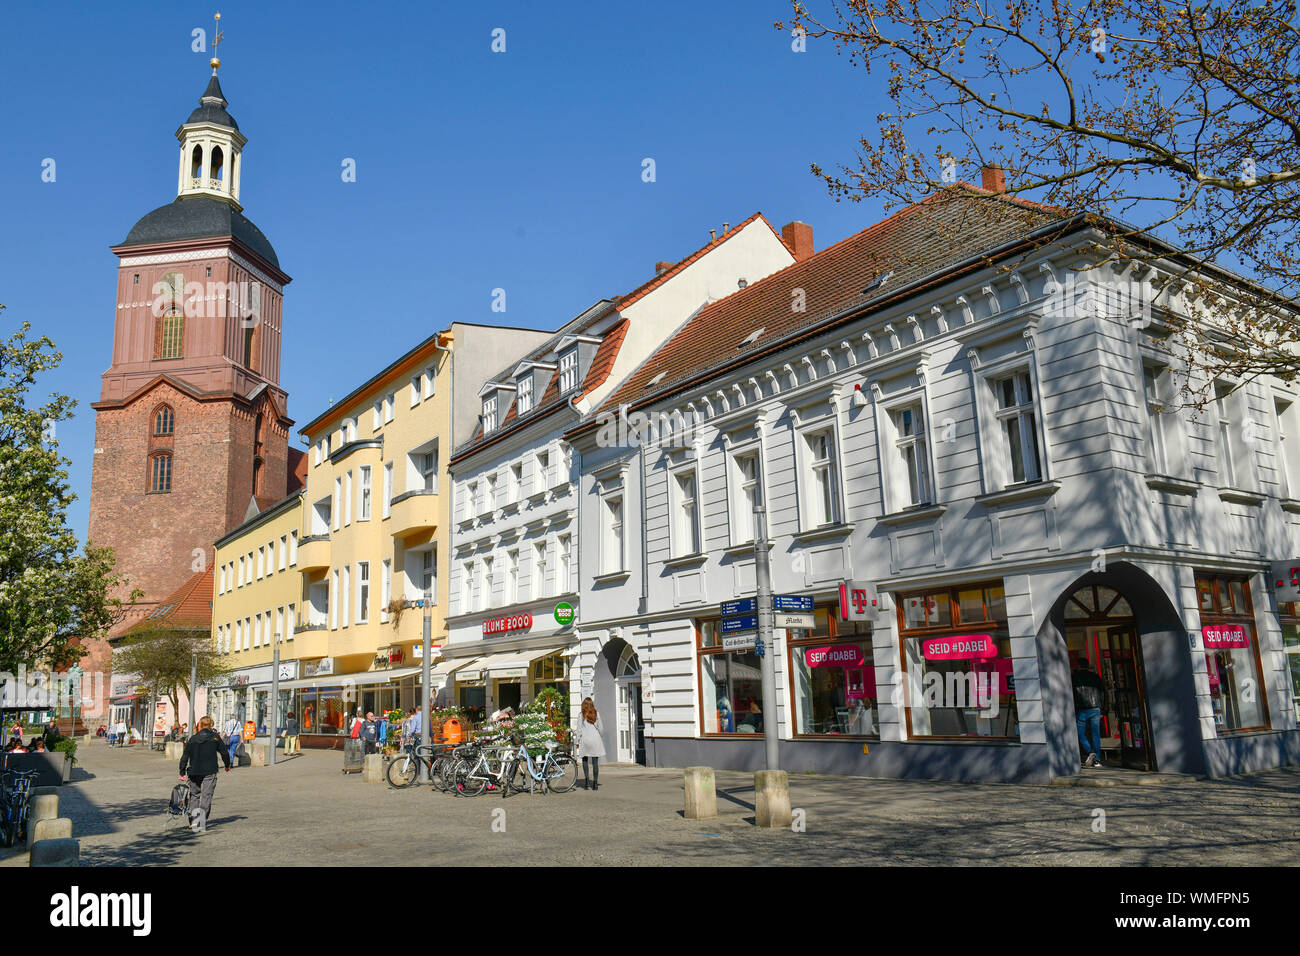 Fussgaengerzone, Einkaufstrasse, Carl-Schurz-strasse, Altstadt, Spandau, Berlin, Deutschland Stock Photo